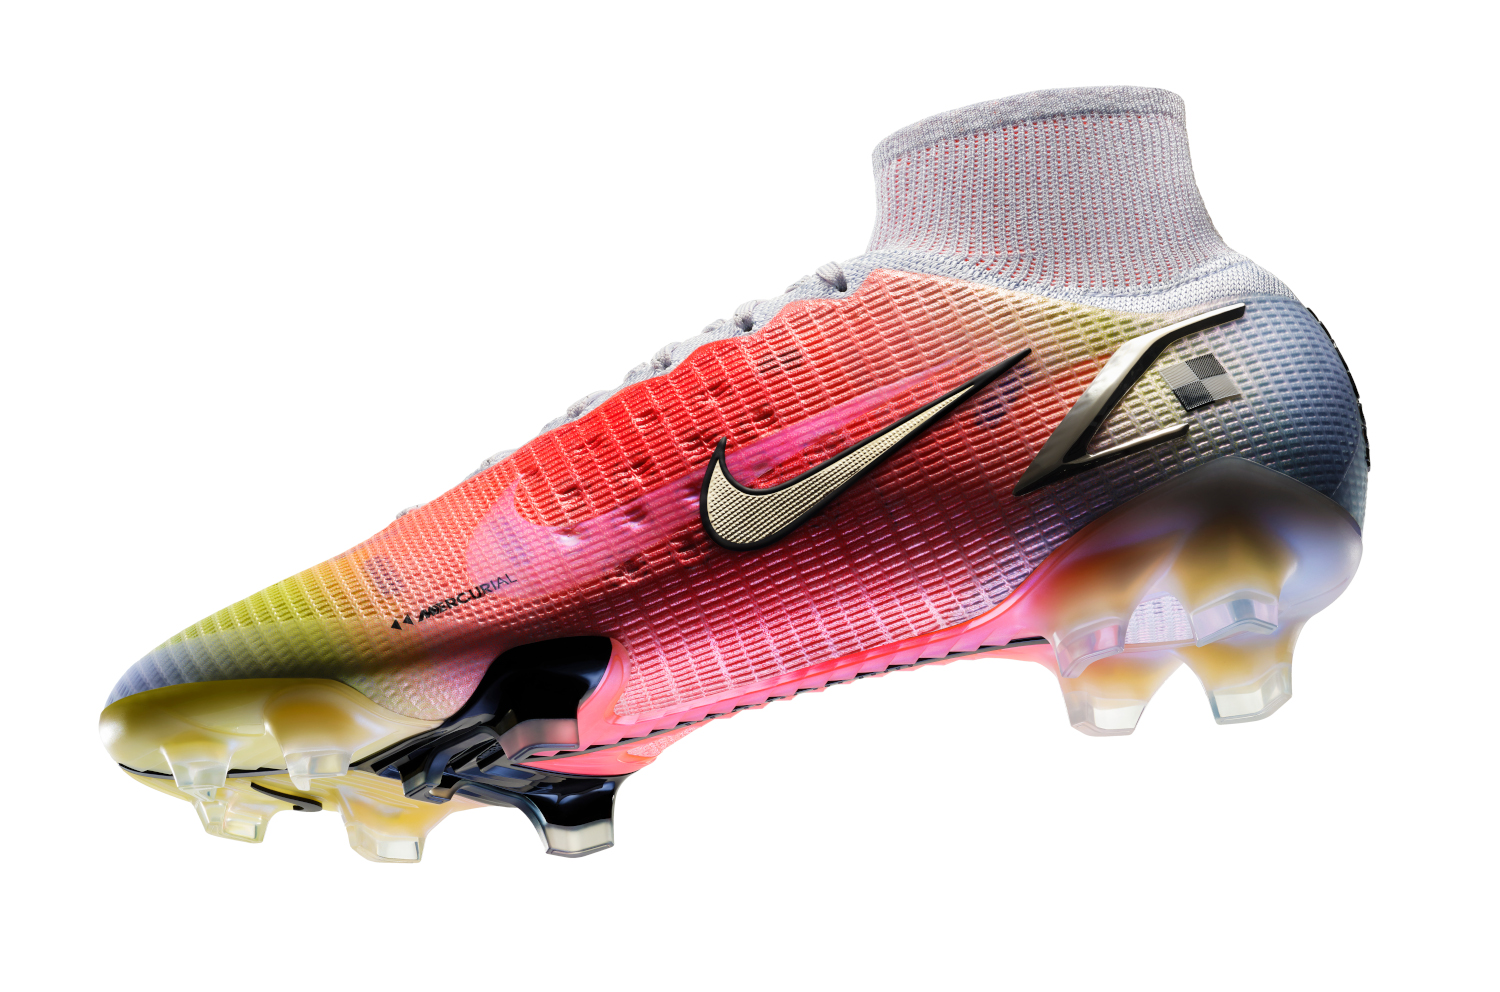 Gezichtsvermogen huren pindas Nike Mercurial Superfly Dream Speed 004 voetbalschoenen -  Voetbal-schoenen.eu